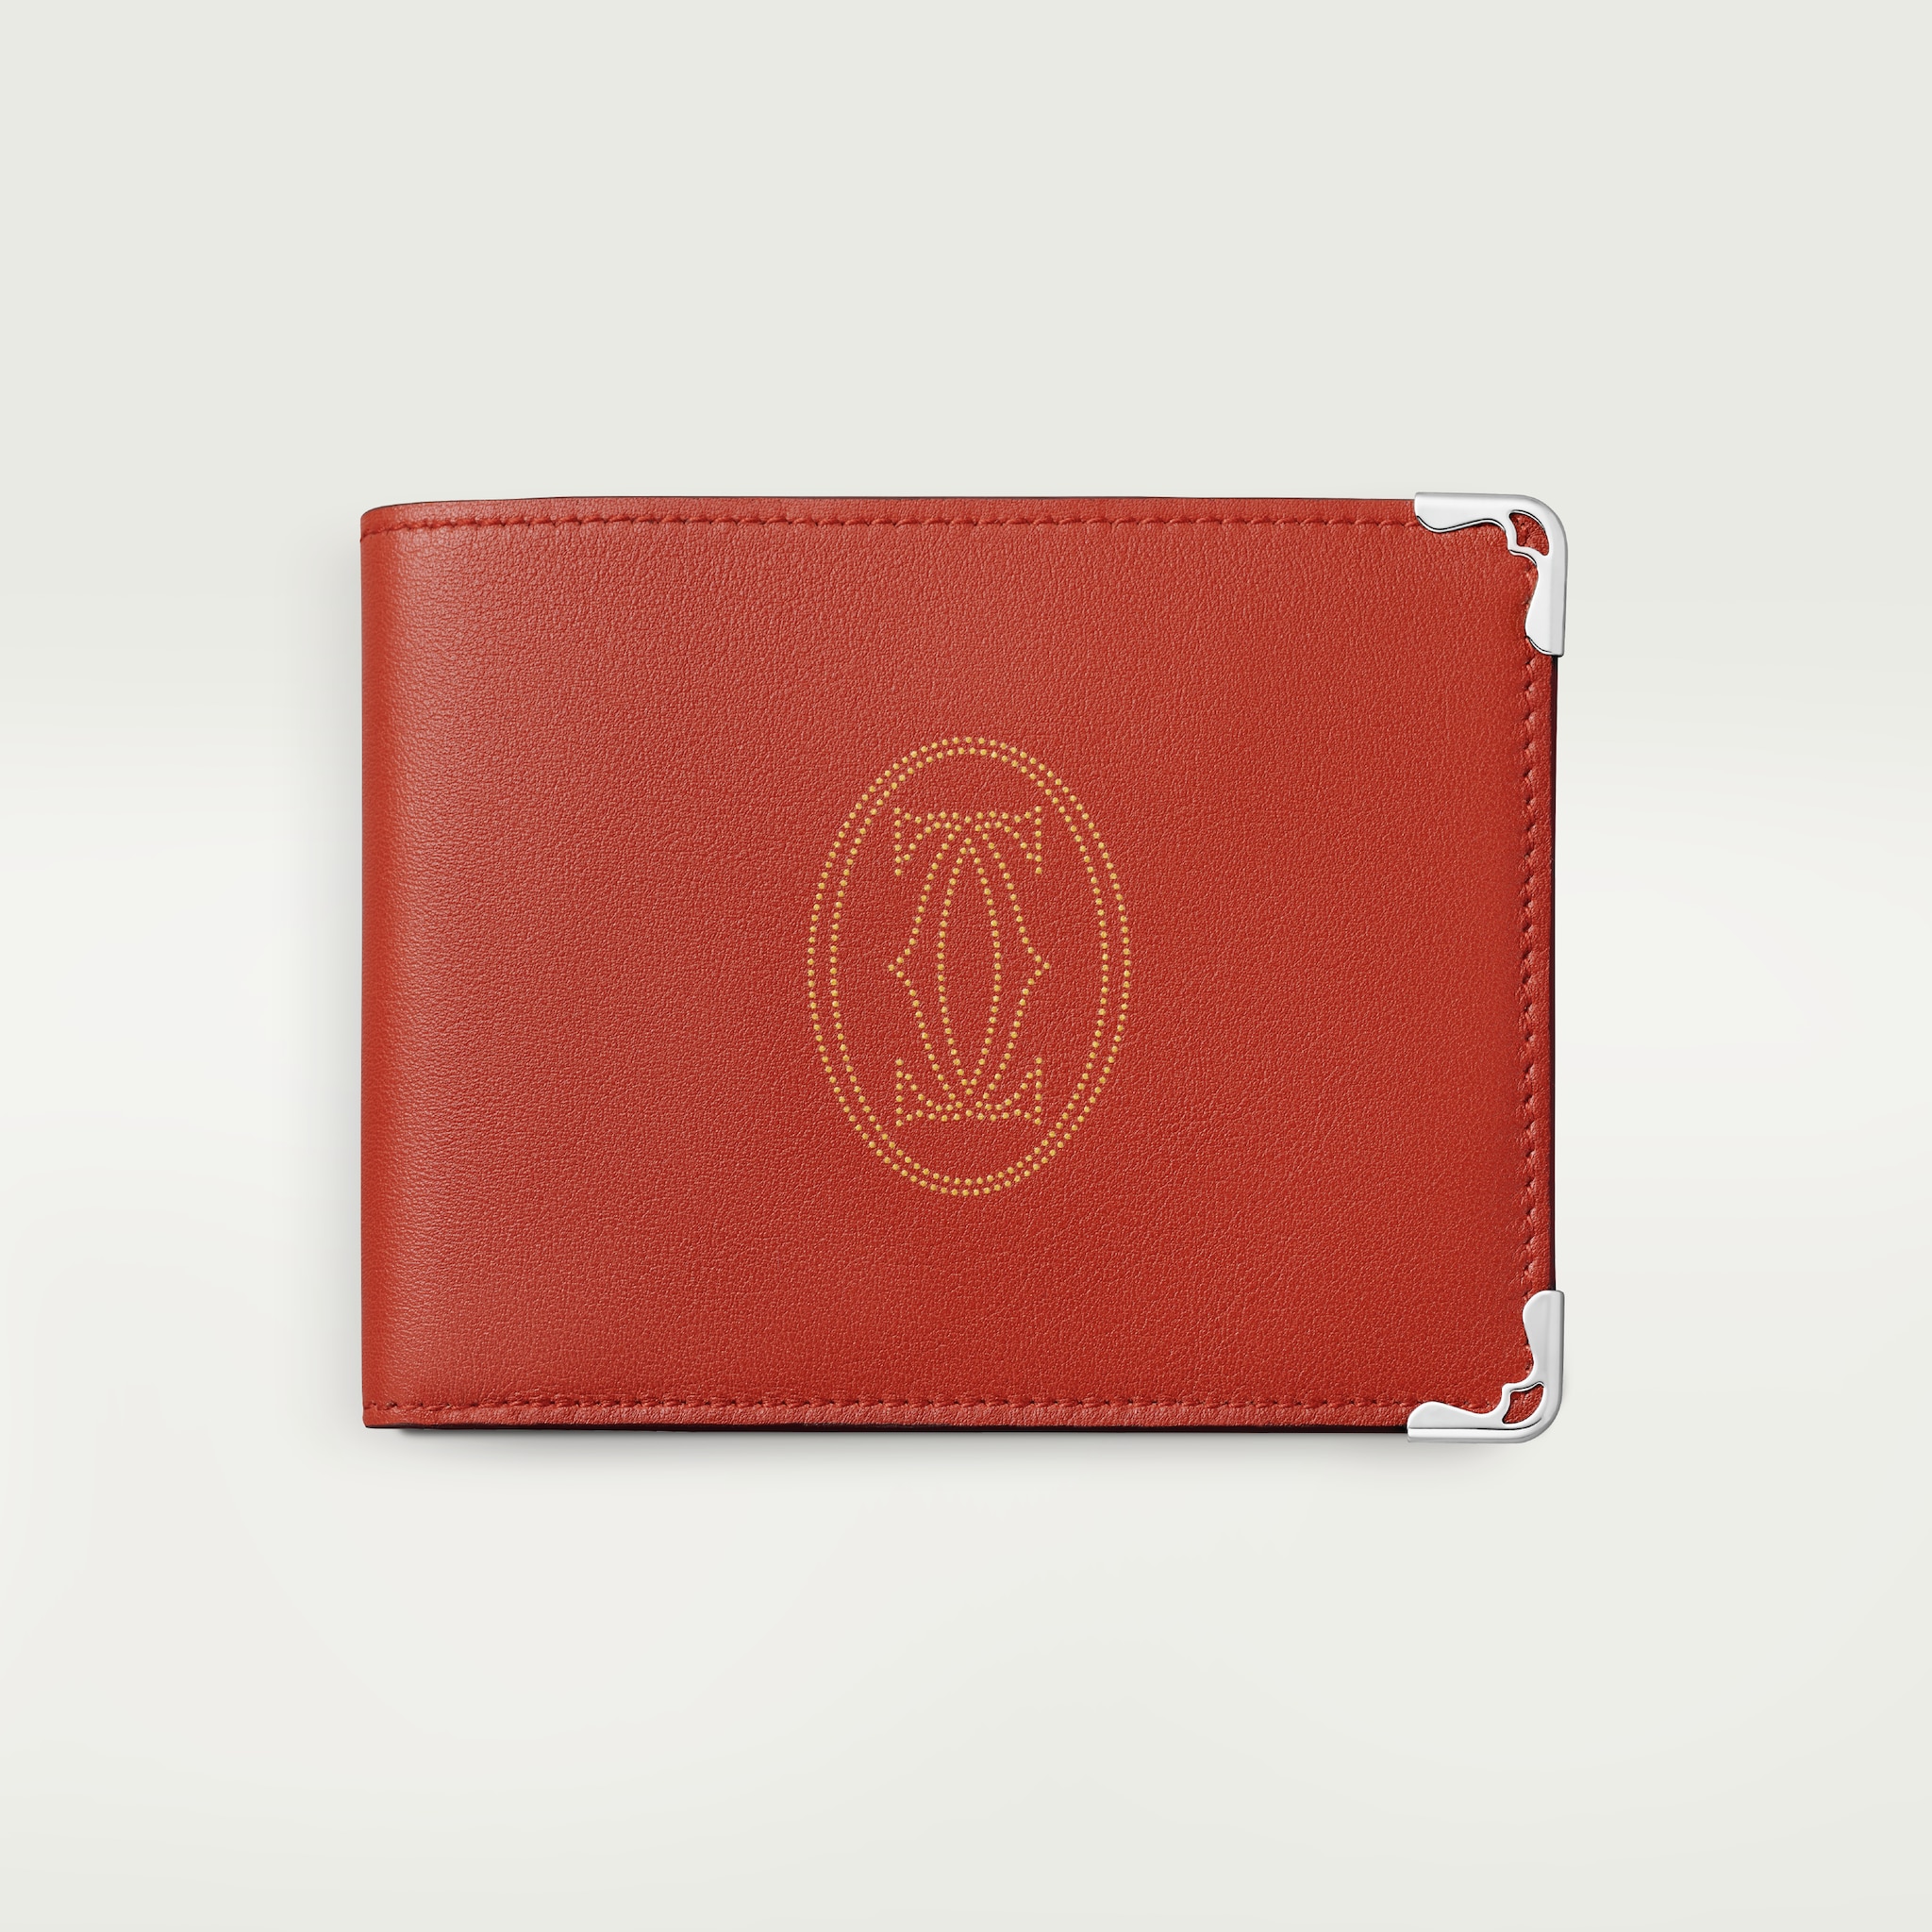 Must de Cartier Small Leather Goods, compact walletTerracotta calfskin